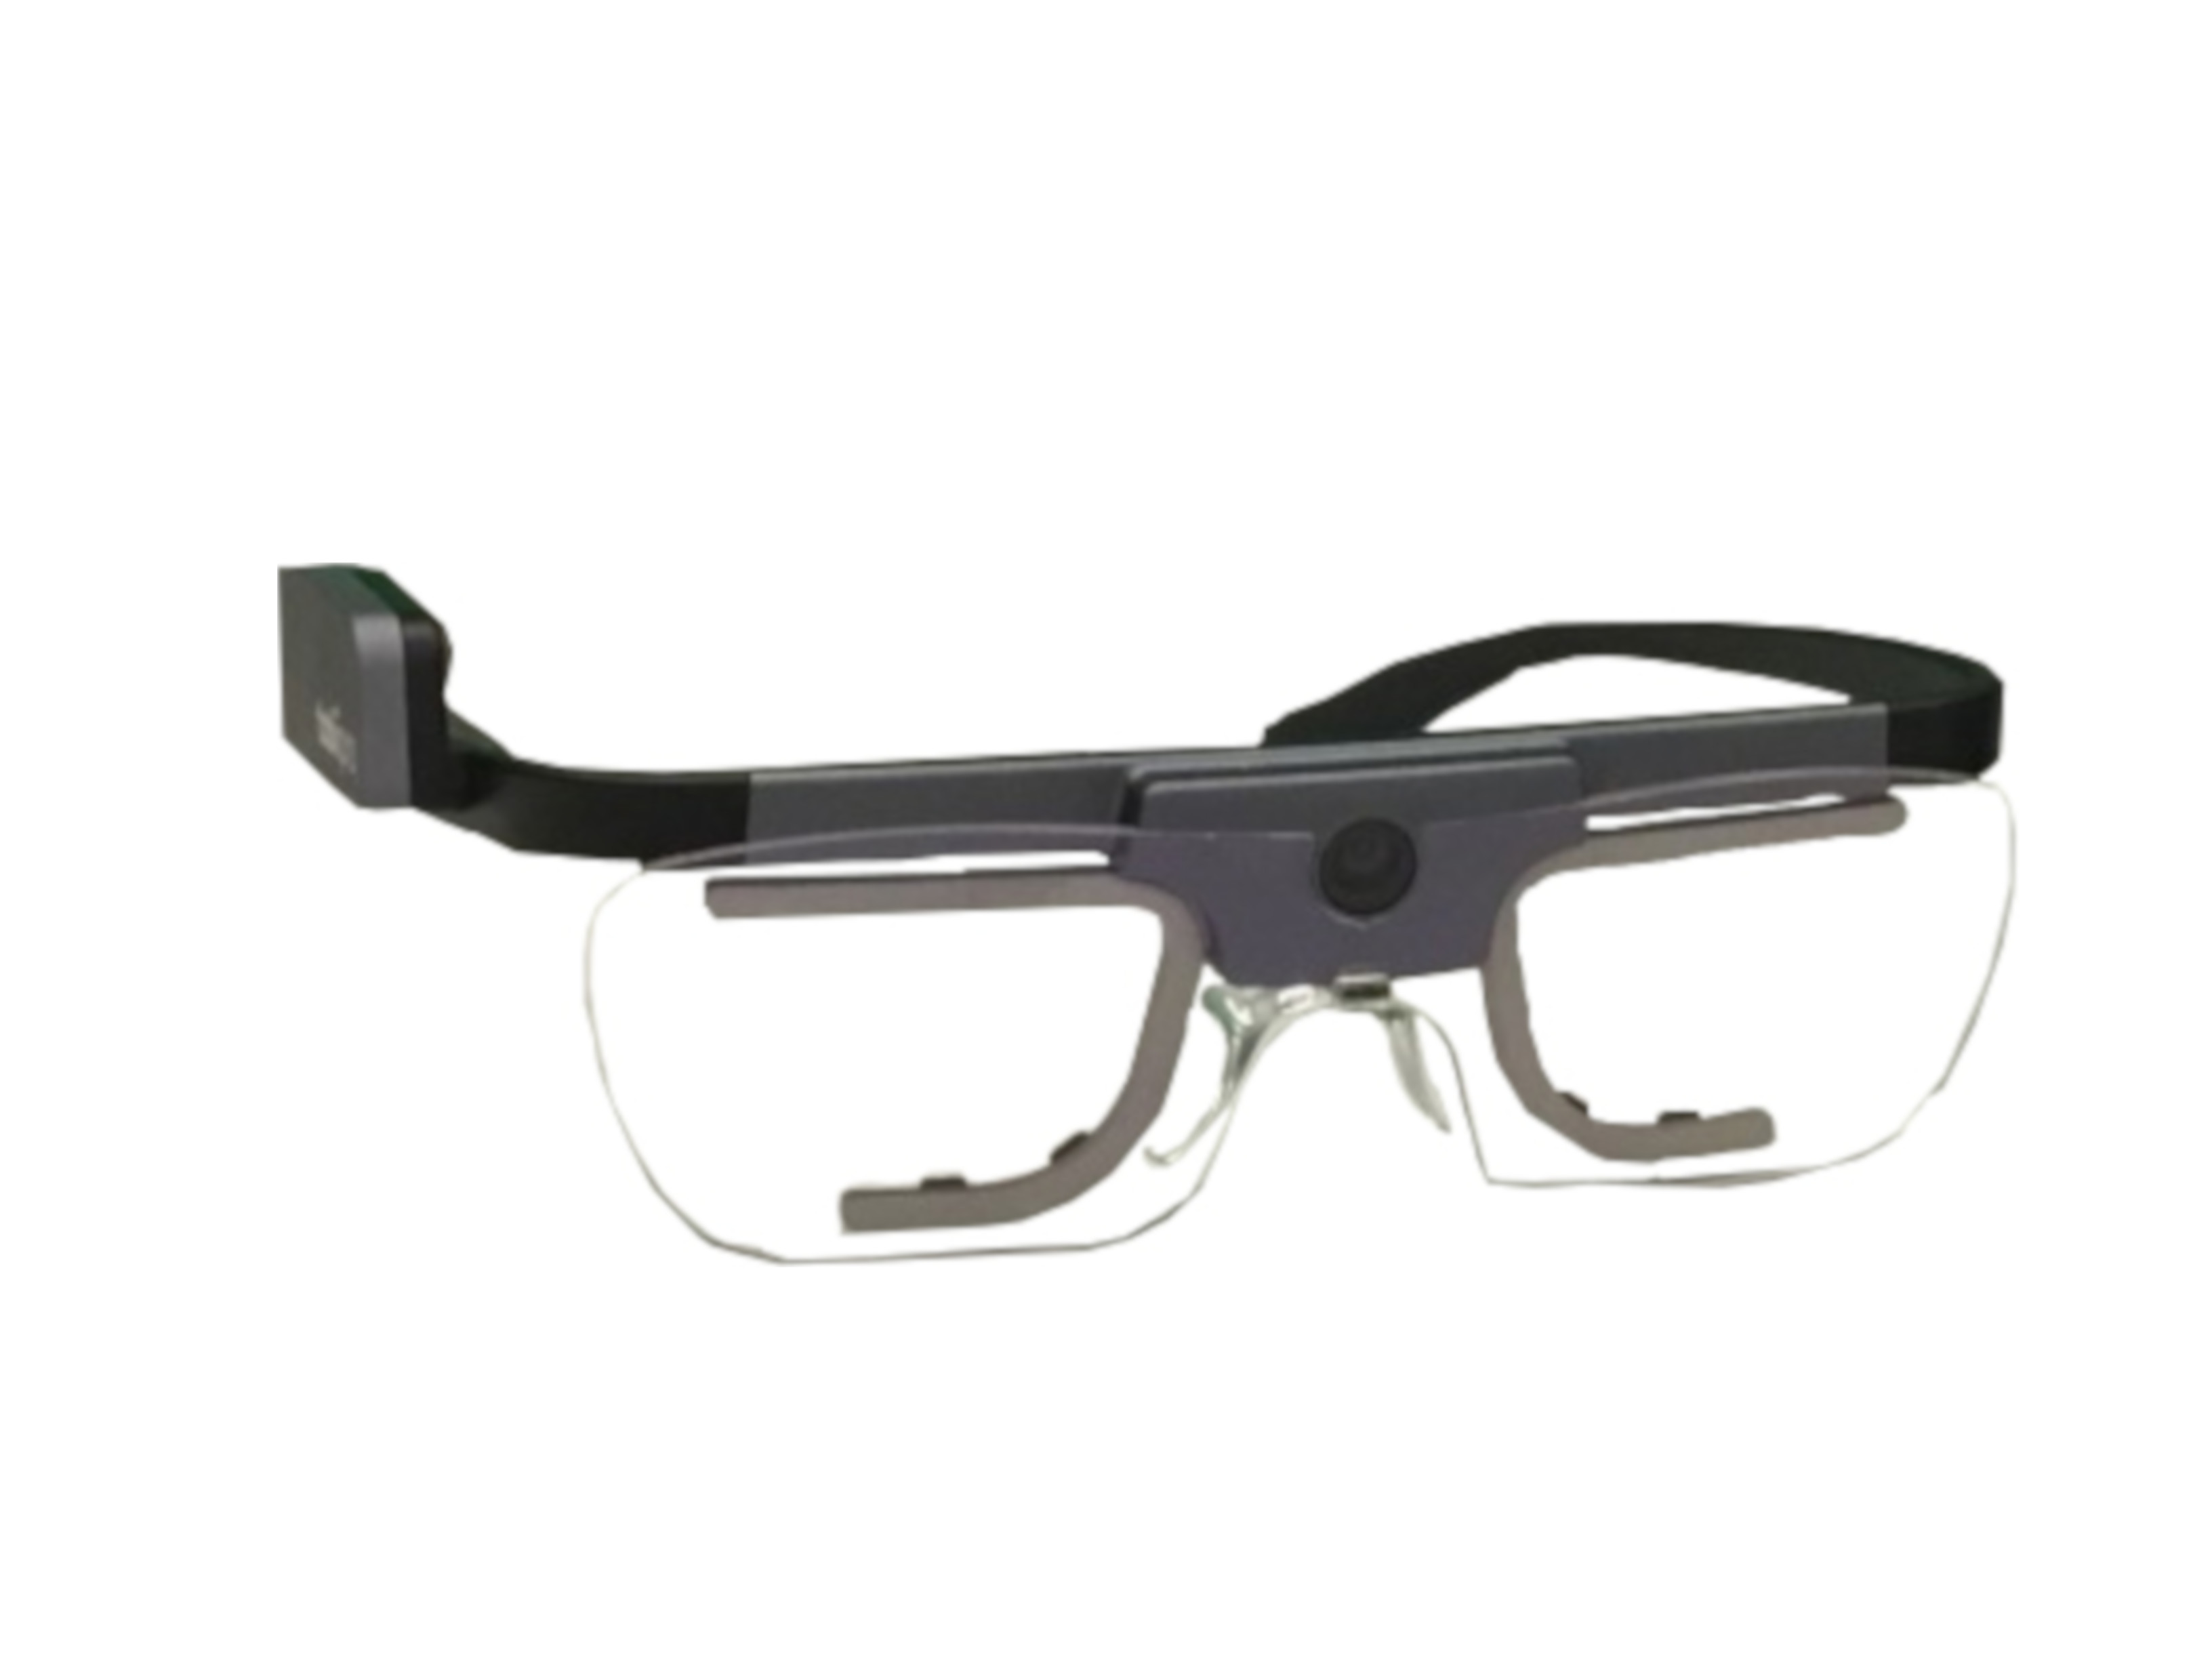 2 x Tobii Pro Glasses 2 Eye-Tracker